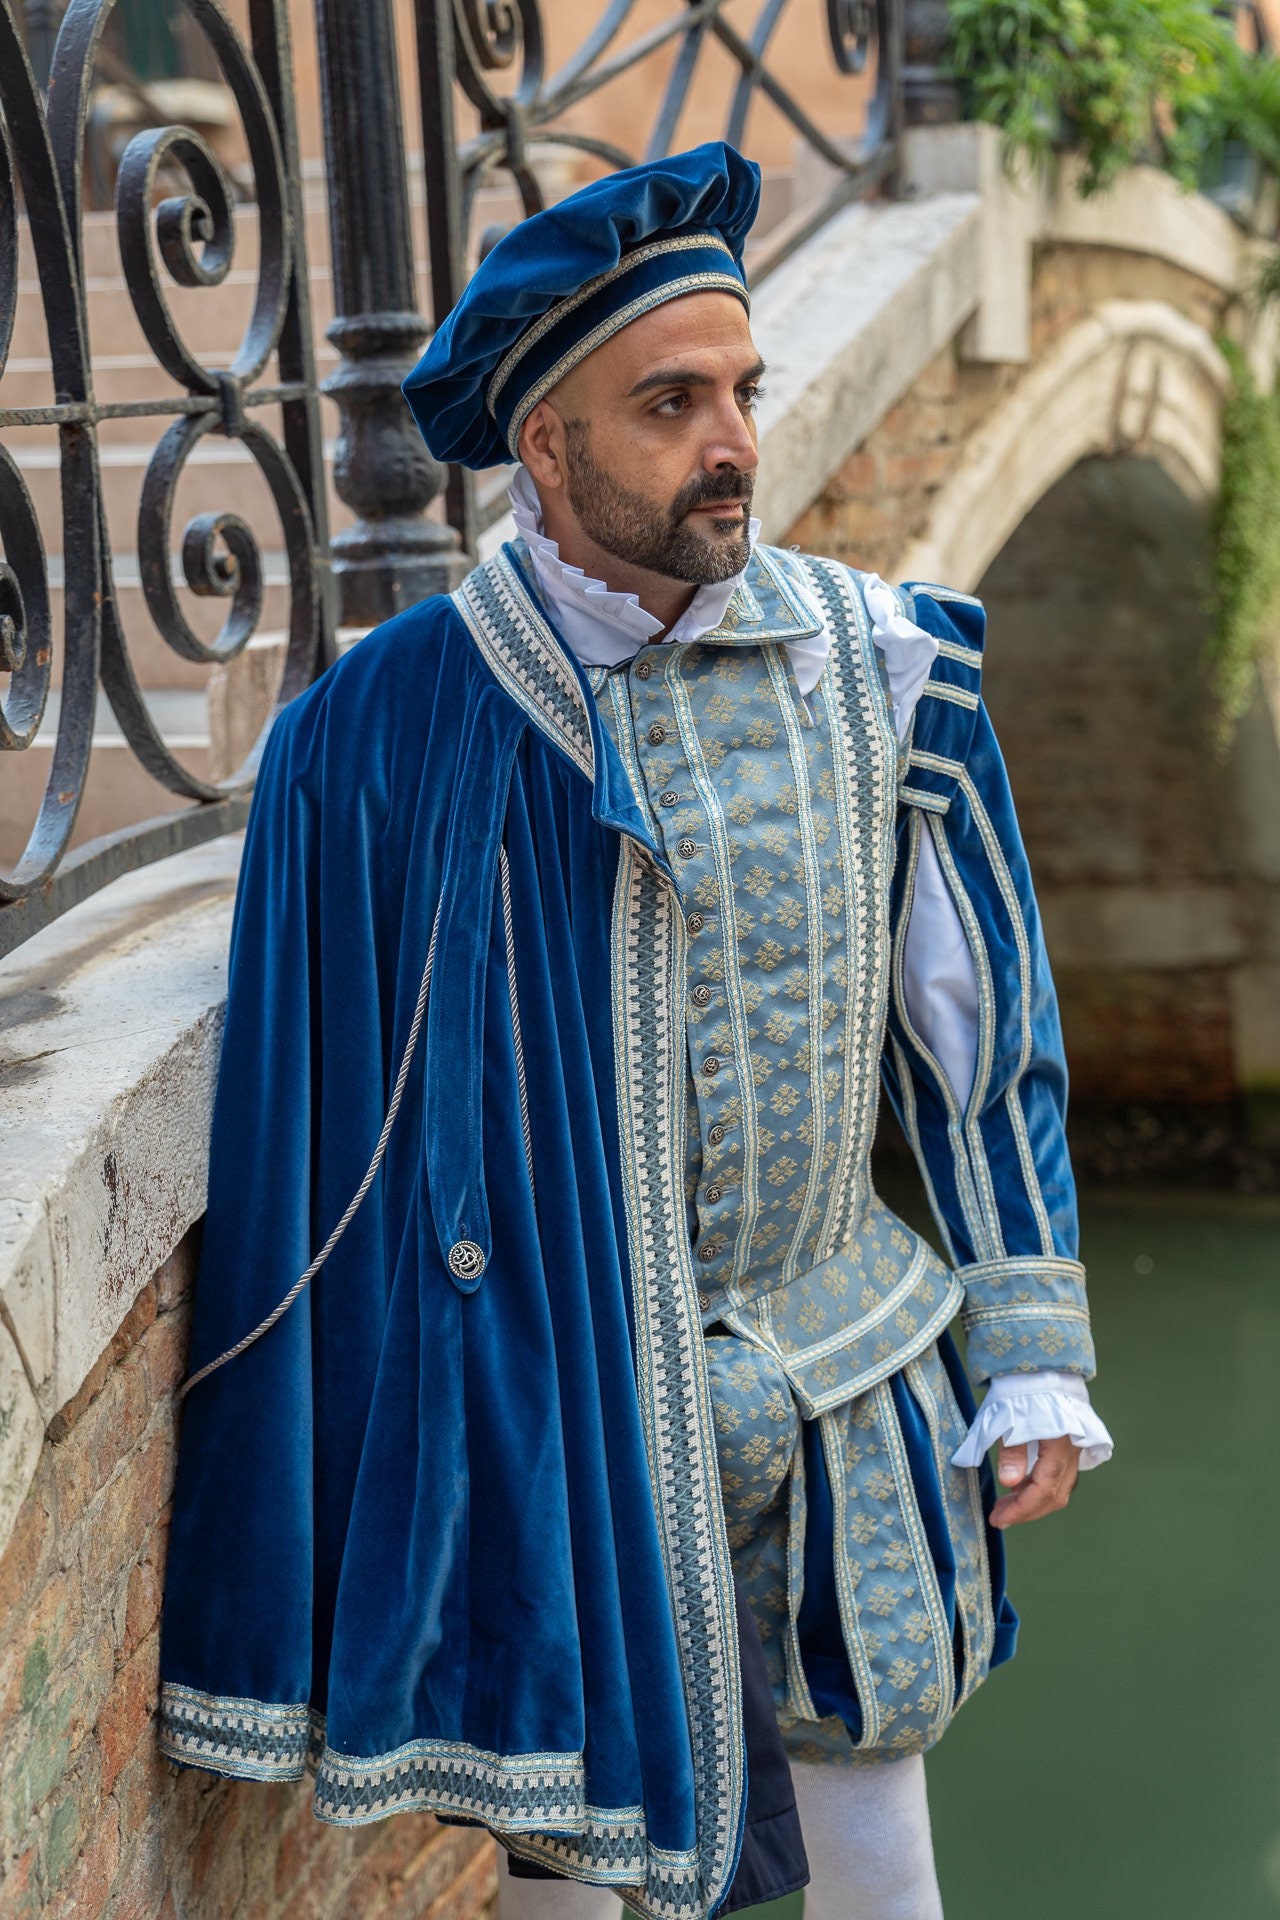 Tudor Elizabethan Adult Men's Green Outfits Costume Renaissance